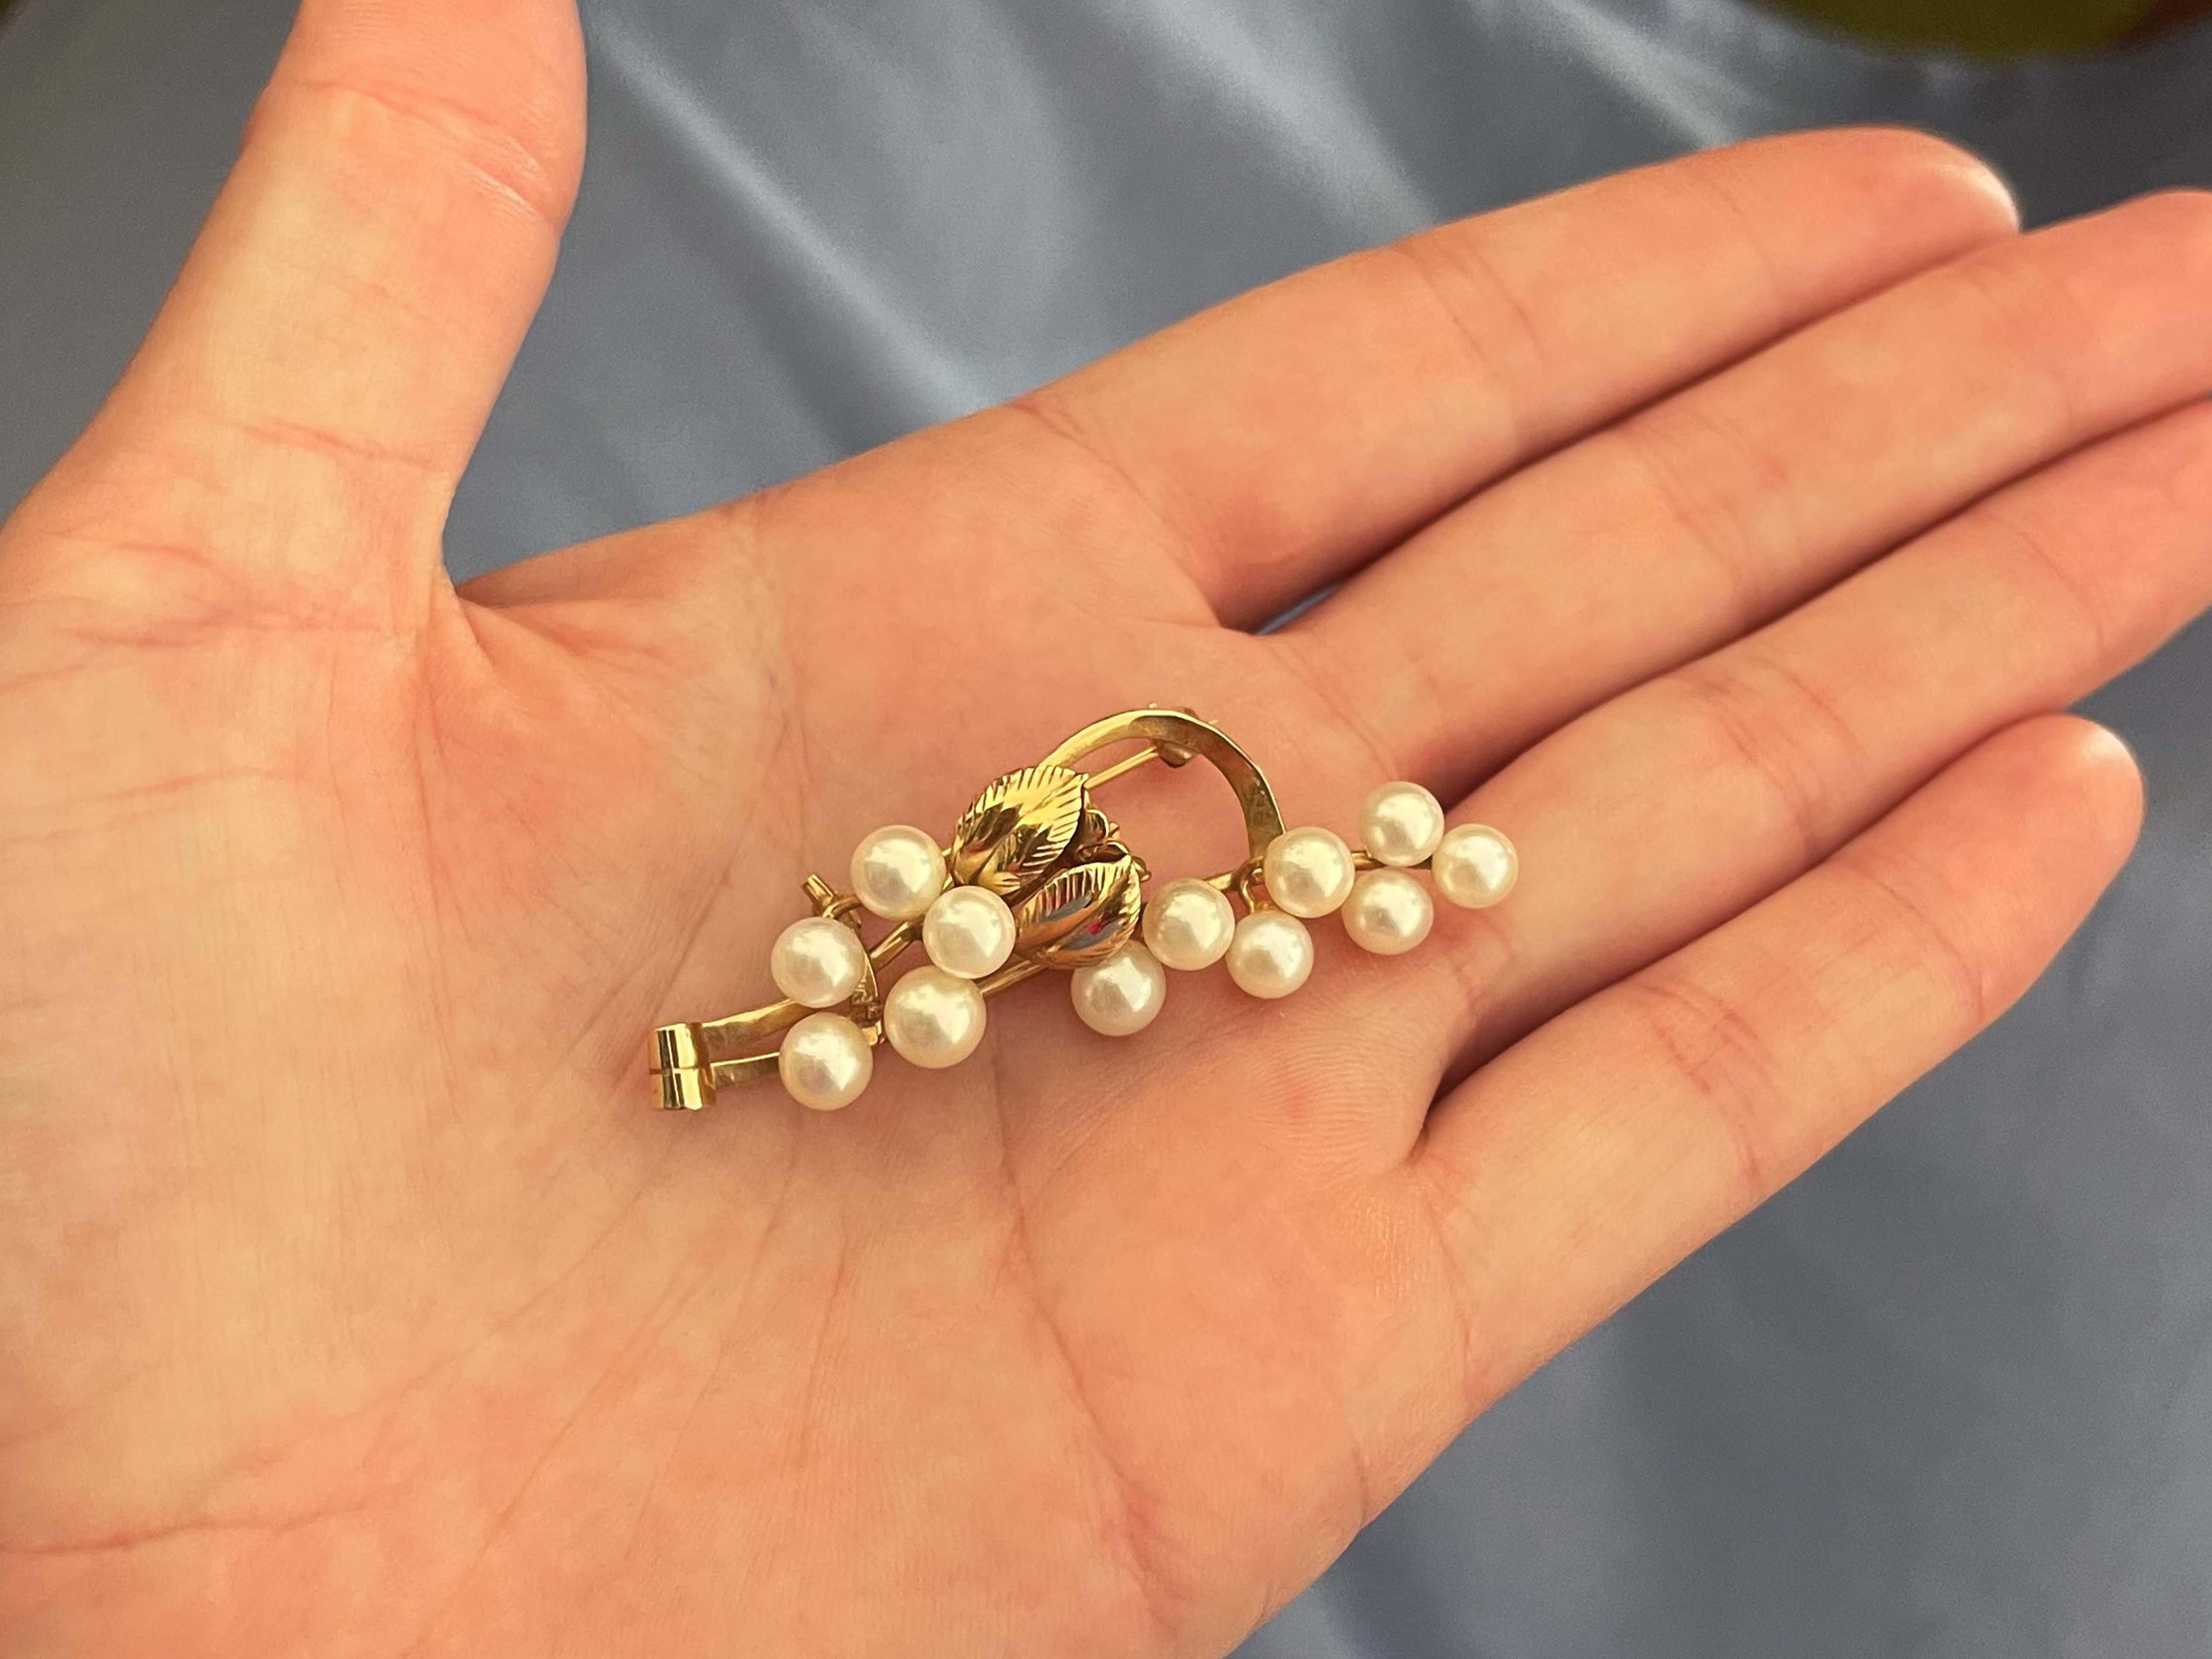 Brosche Spezifikationen:

Designer: Ming's

Metall: 14k Gelbgold

Perlen: Akoya-Perlen

Gesamtgewicht: 6,8 Gramm

Brosche Abmessungen: 2